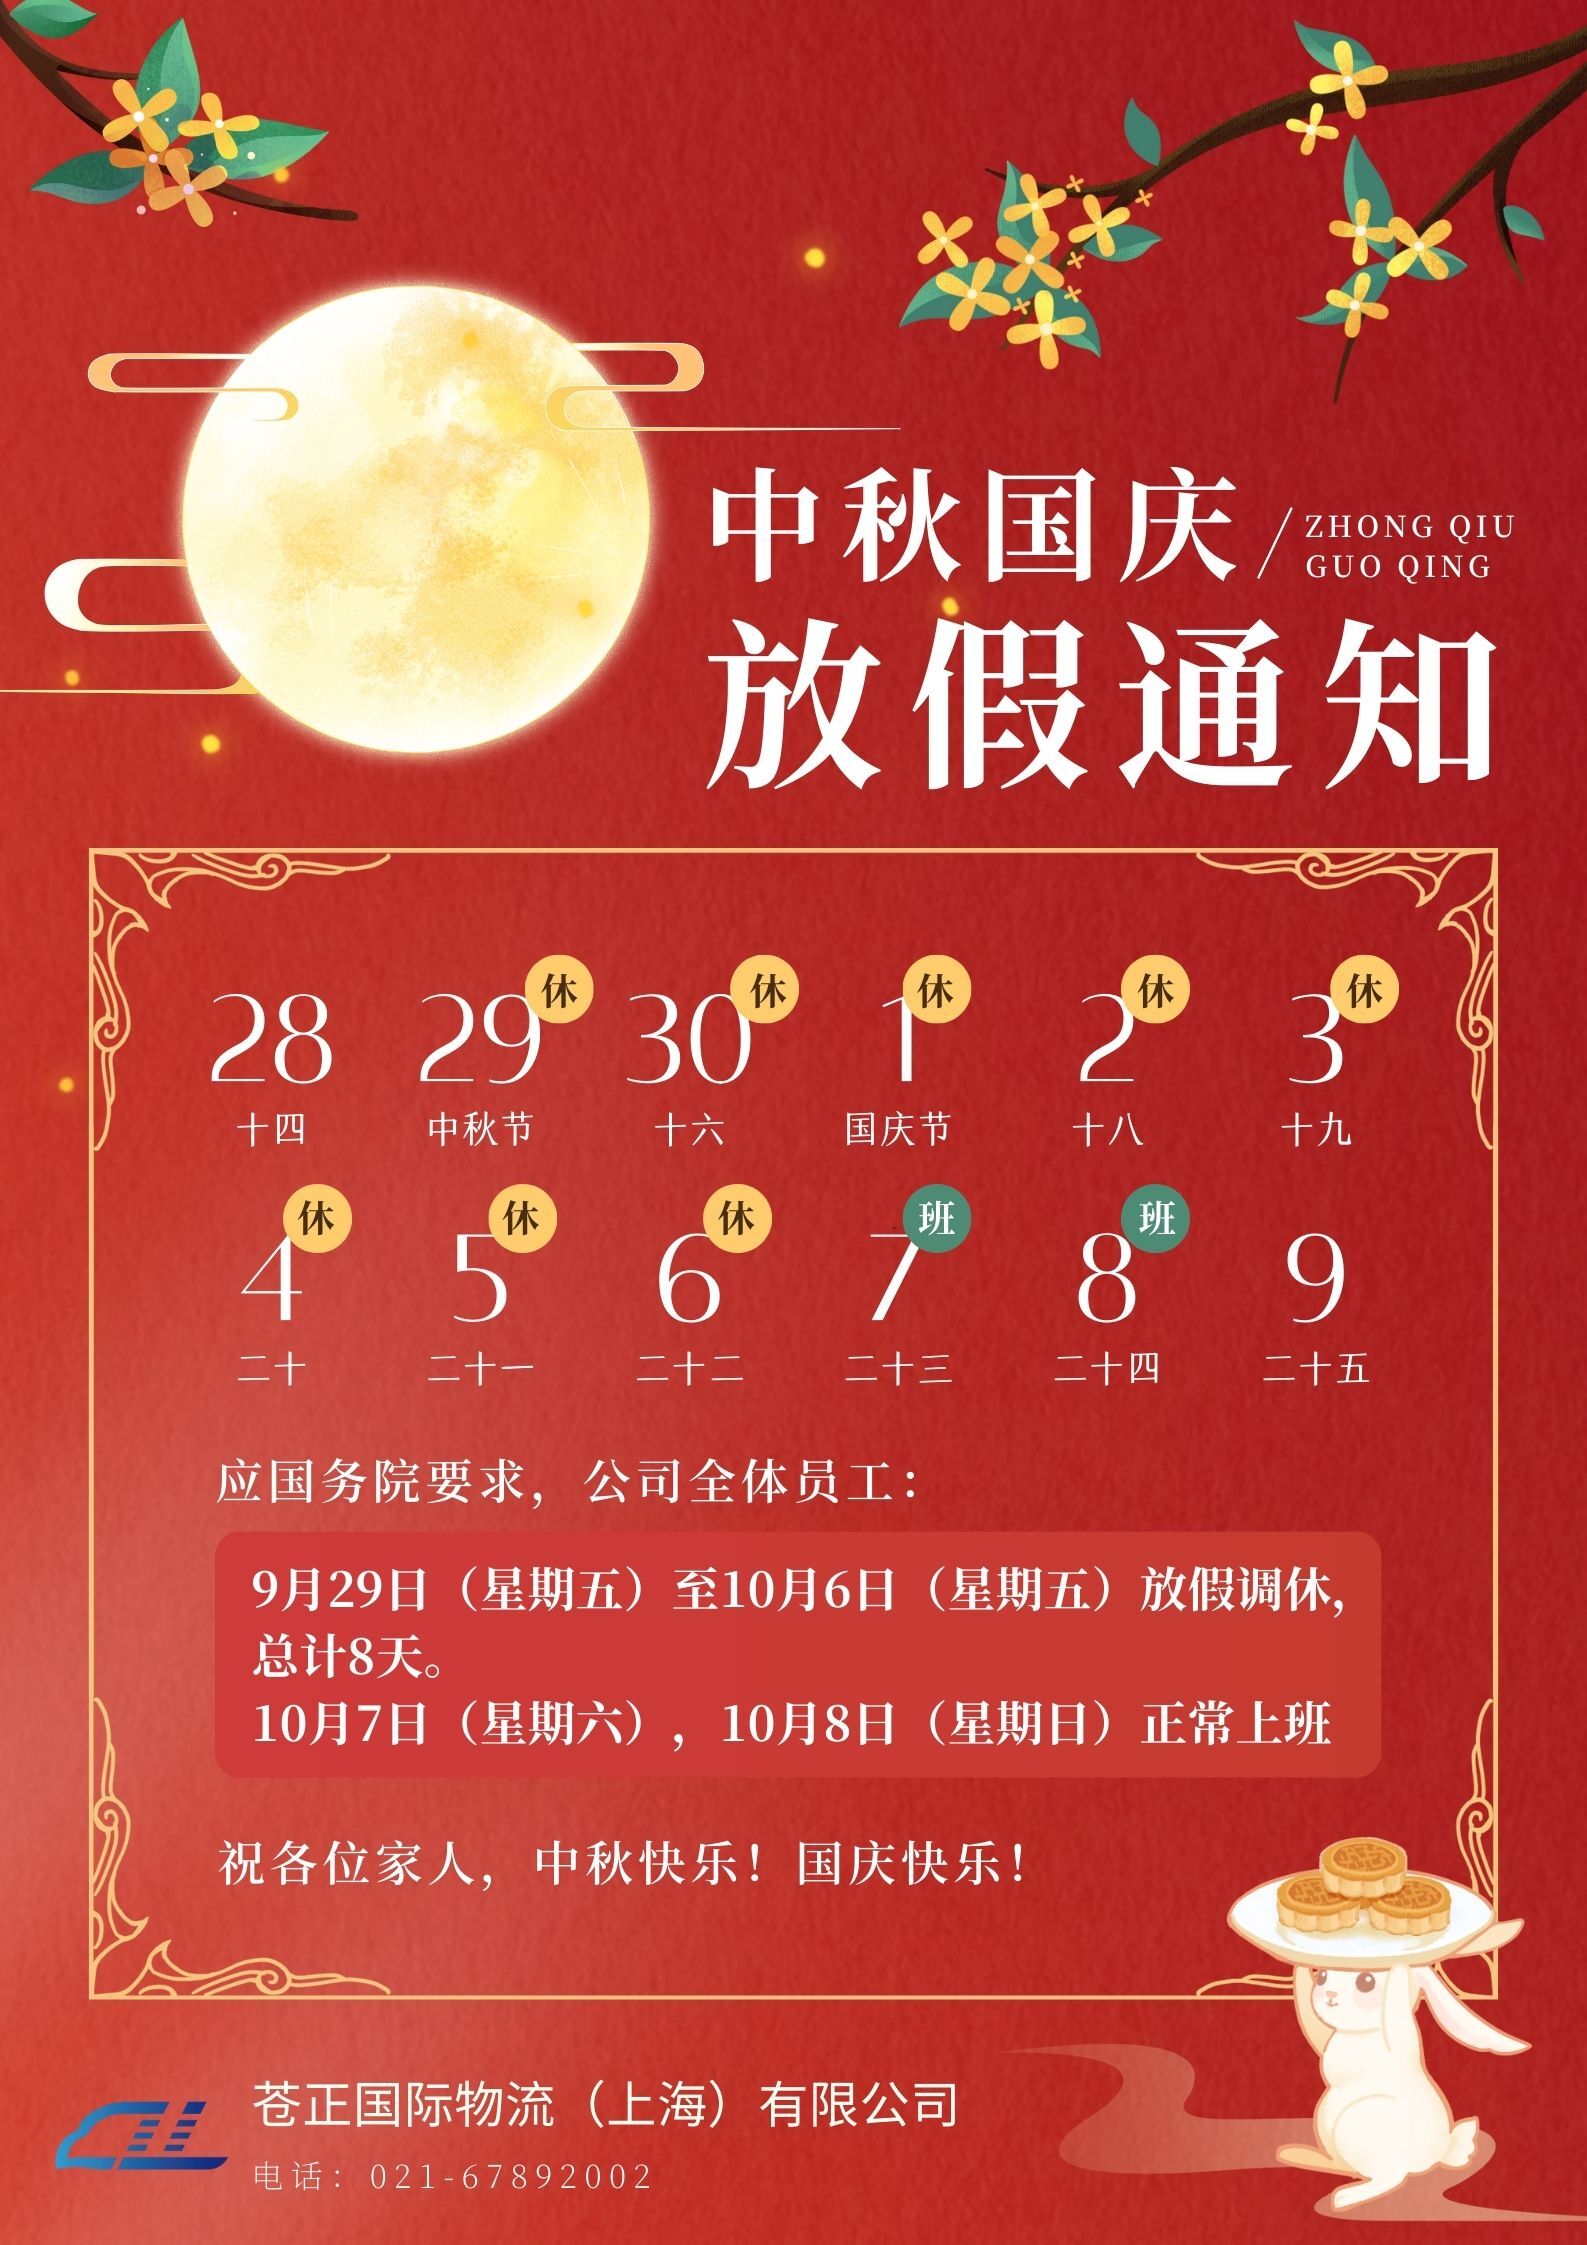 红黄色中式中国风中秋节国庆节放假通知中文海报.jpg